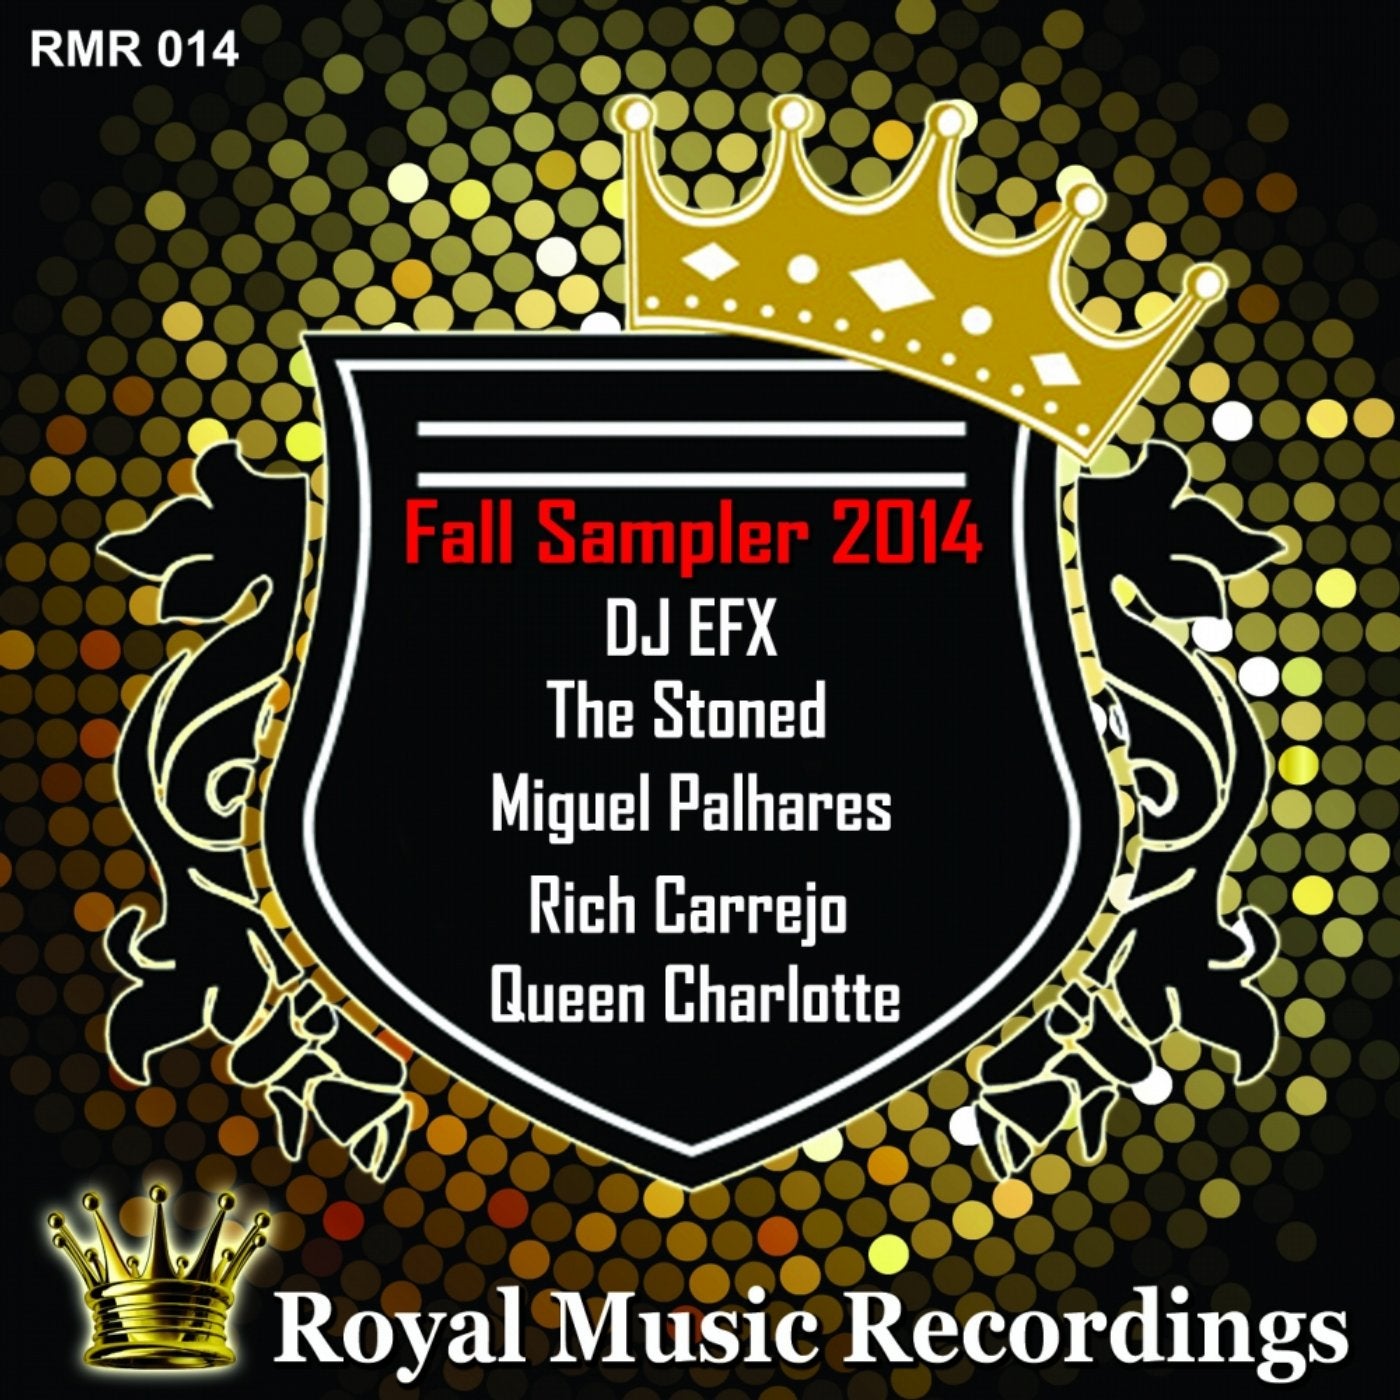 Royal Music Recordings Fall Sampler 2014